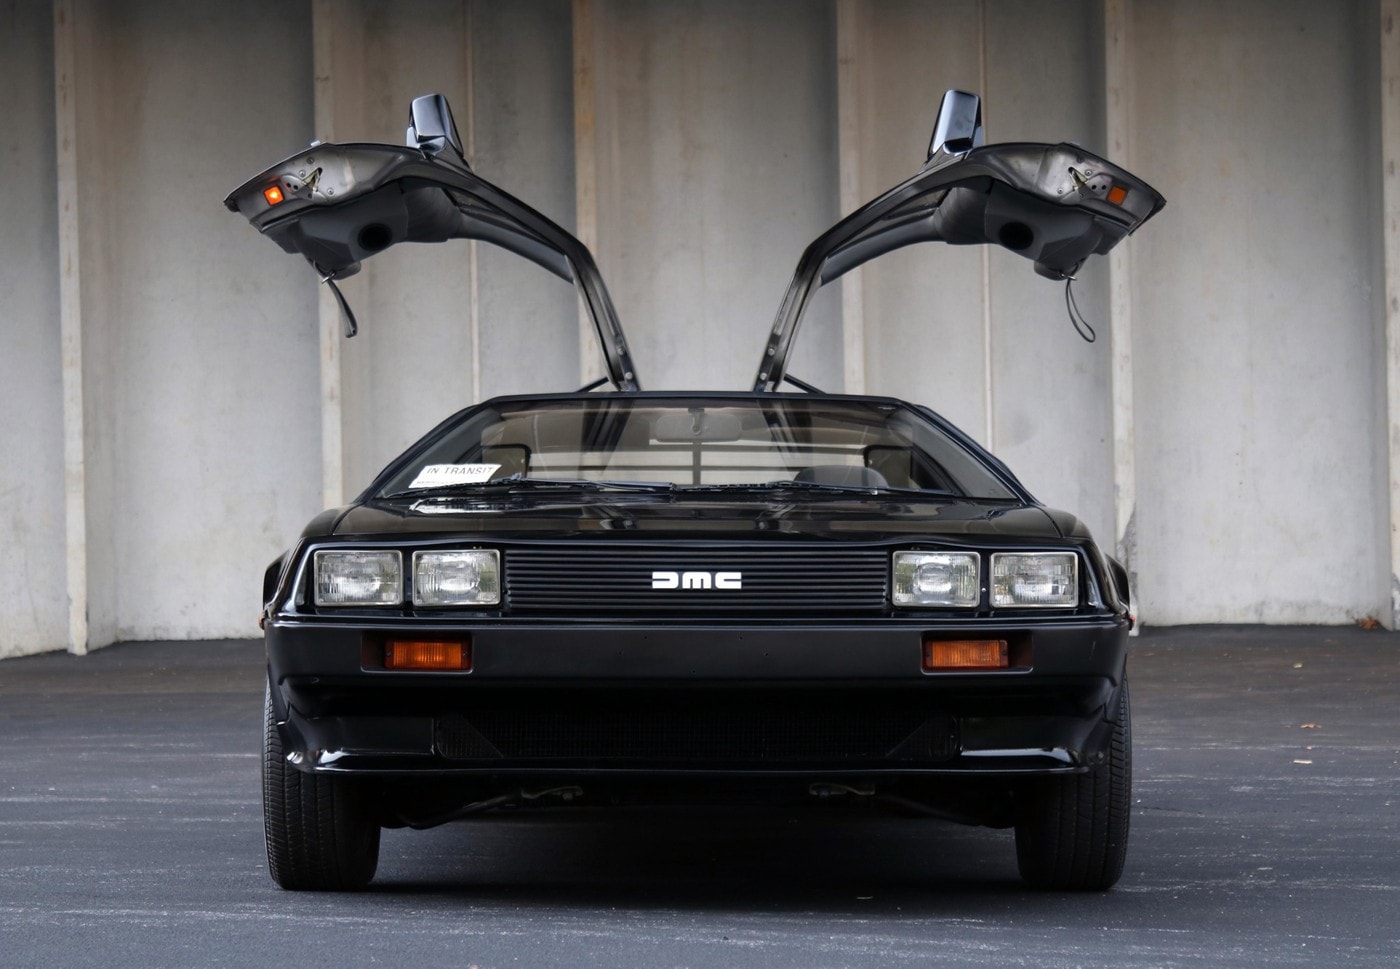 罕見 1981 年經典車款 DeLorean DMC-12 於拍賣會中正式賣出